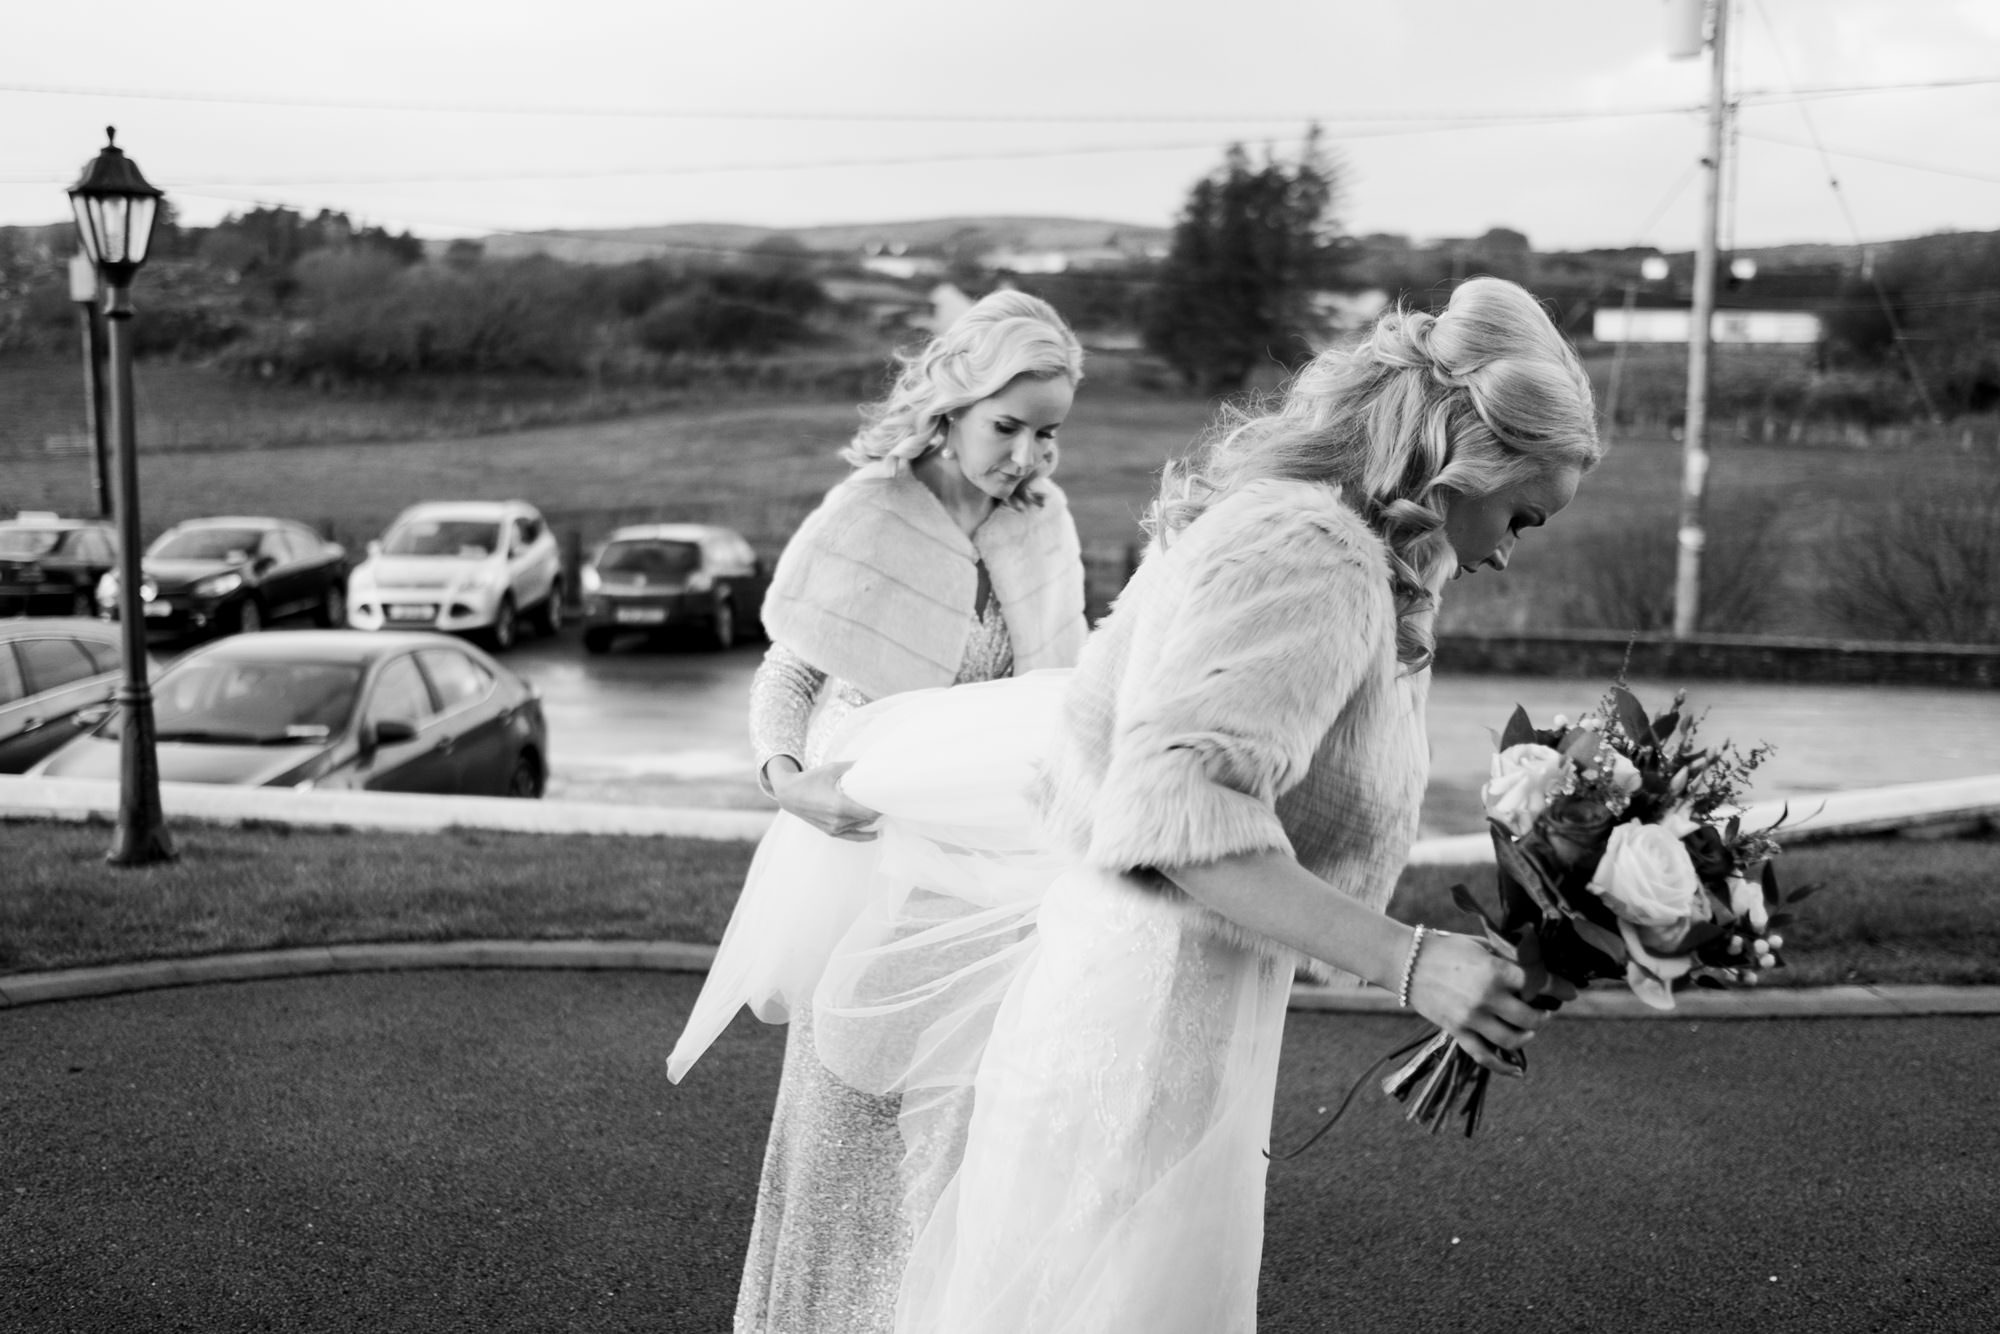 Portnoo wedding photography